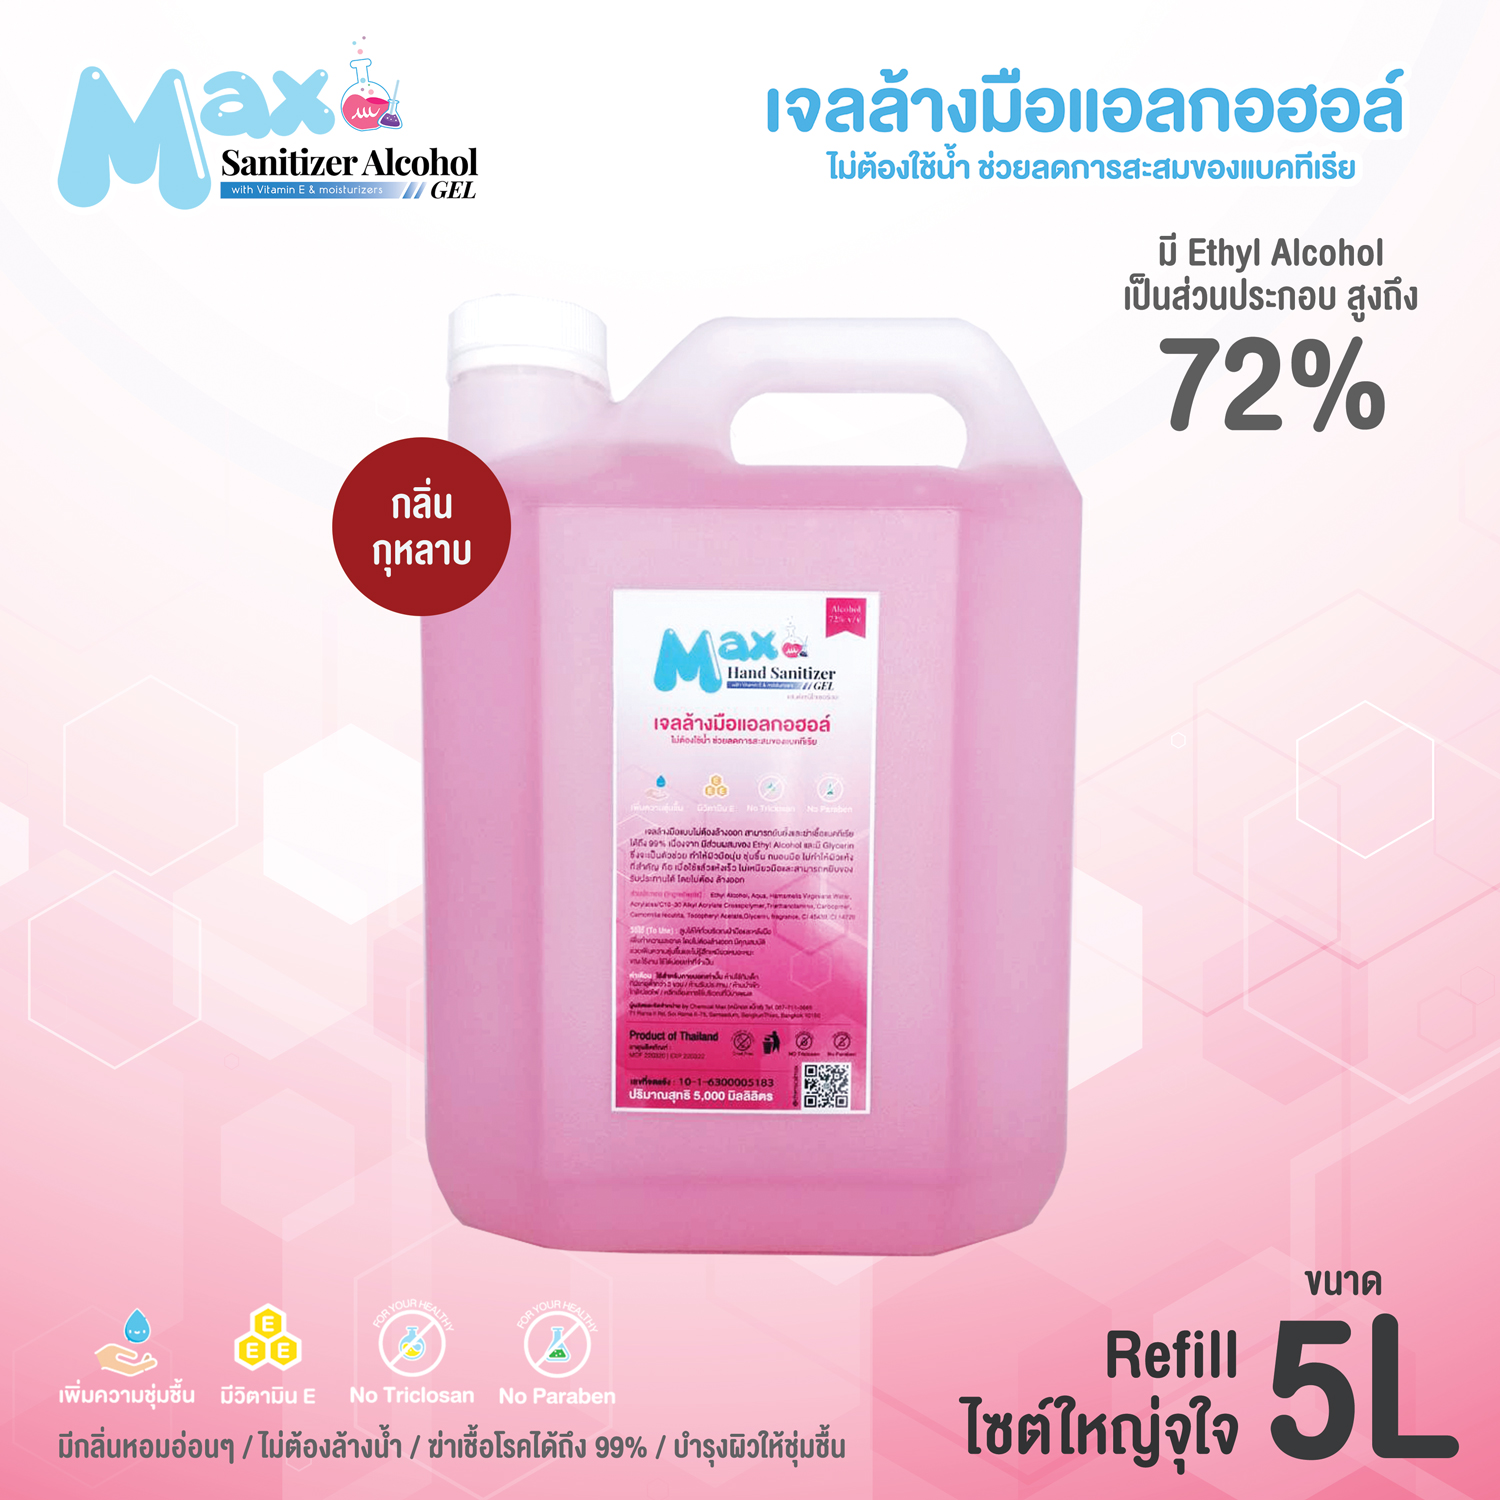 Chemicalmax - Refill 5 ลิตร เจลล้างมือแอลกอฮอล์ แบบไม่ต้องล้างออก ชนิดเติม แอลกอฮอล์ 72% เจล สีชมพู กลิ่น กุหลาบ